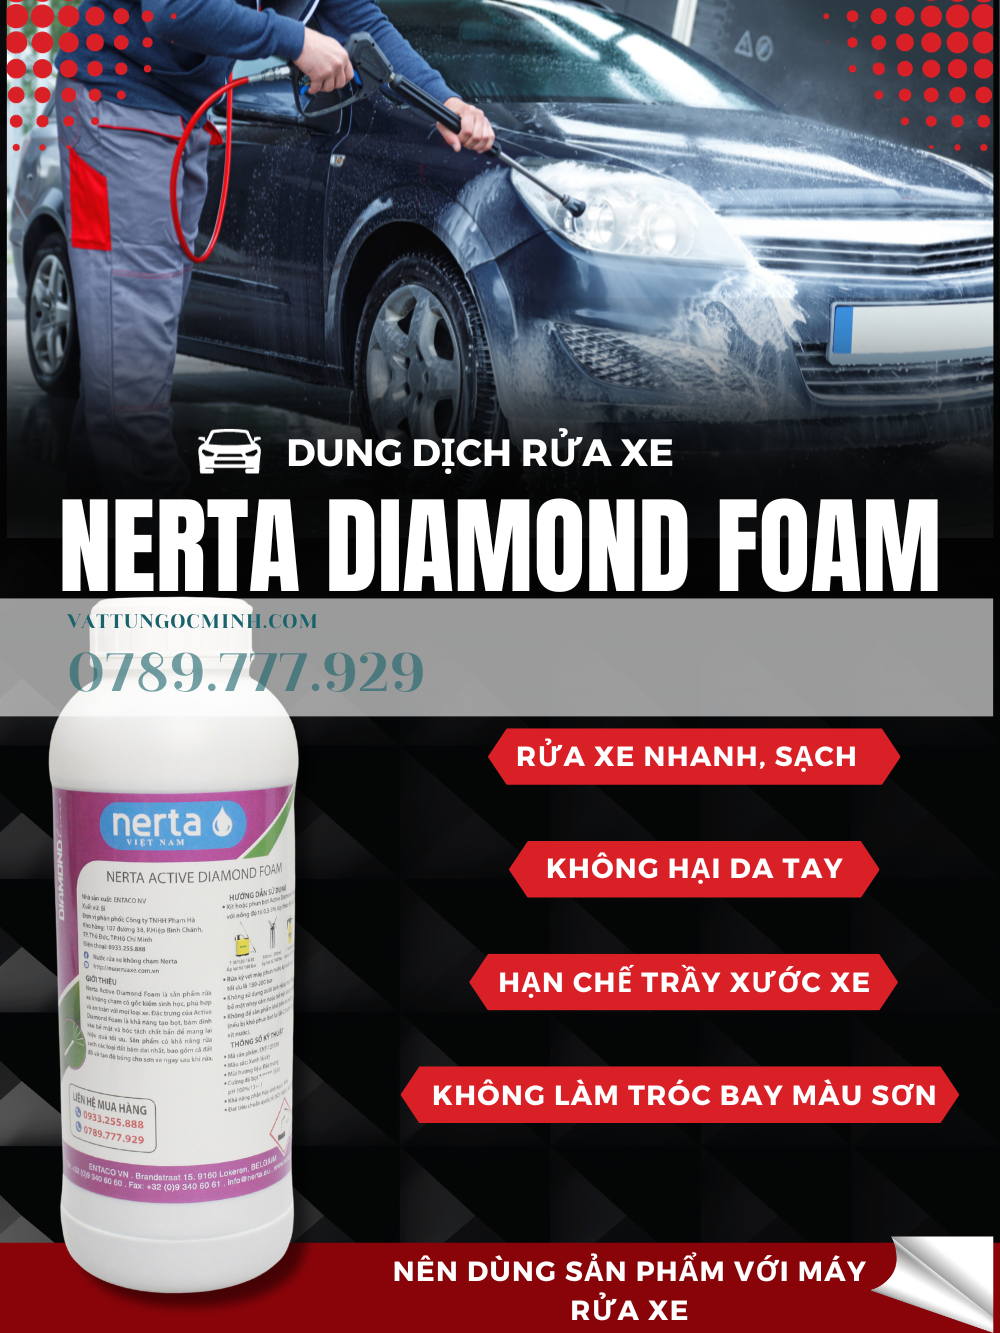 DUNG DỊCH RỬA XE KHÔNG CHẠM - NERTA ACTIVE DIAMOND FOAM - 1.000 ML ( 1 lit)